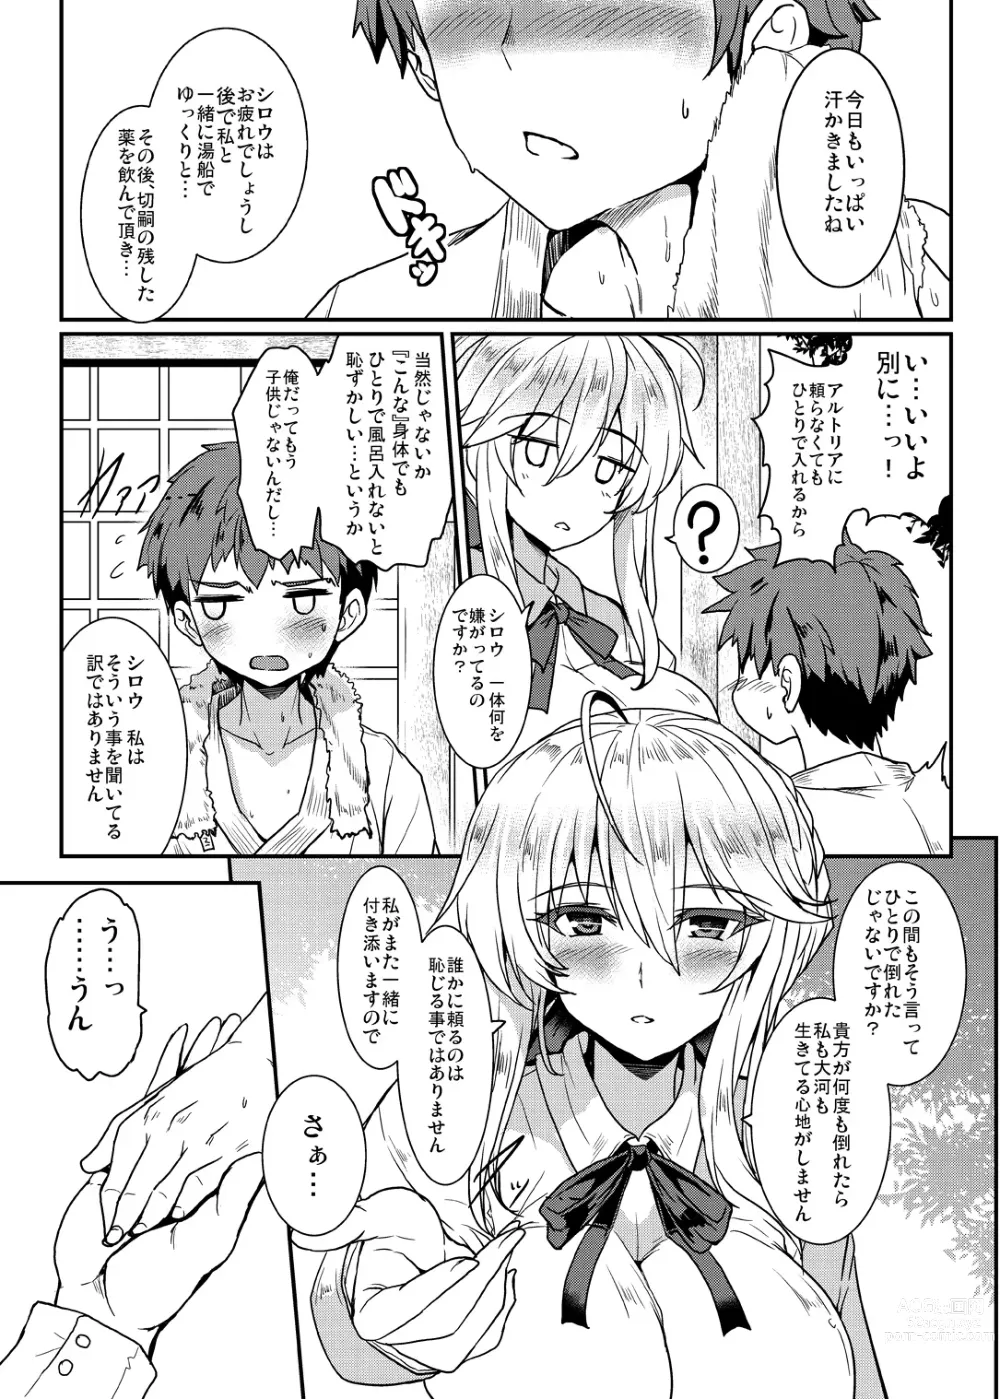 Page 9 of doujinshi Tonari no Chichiou-sama Memories Vol. 1